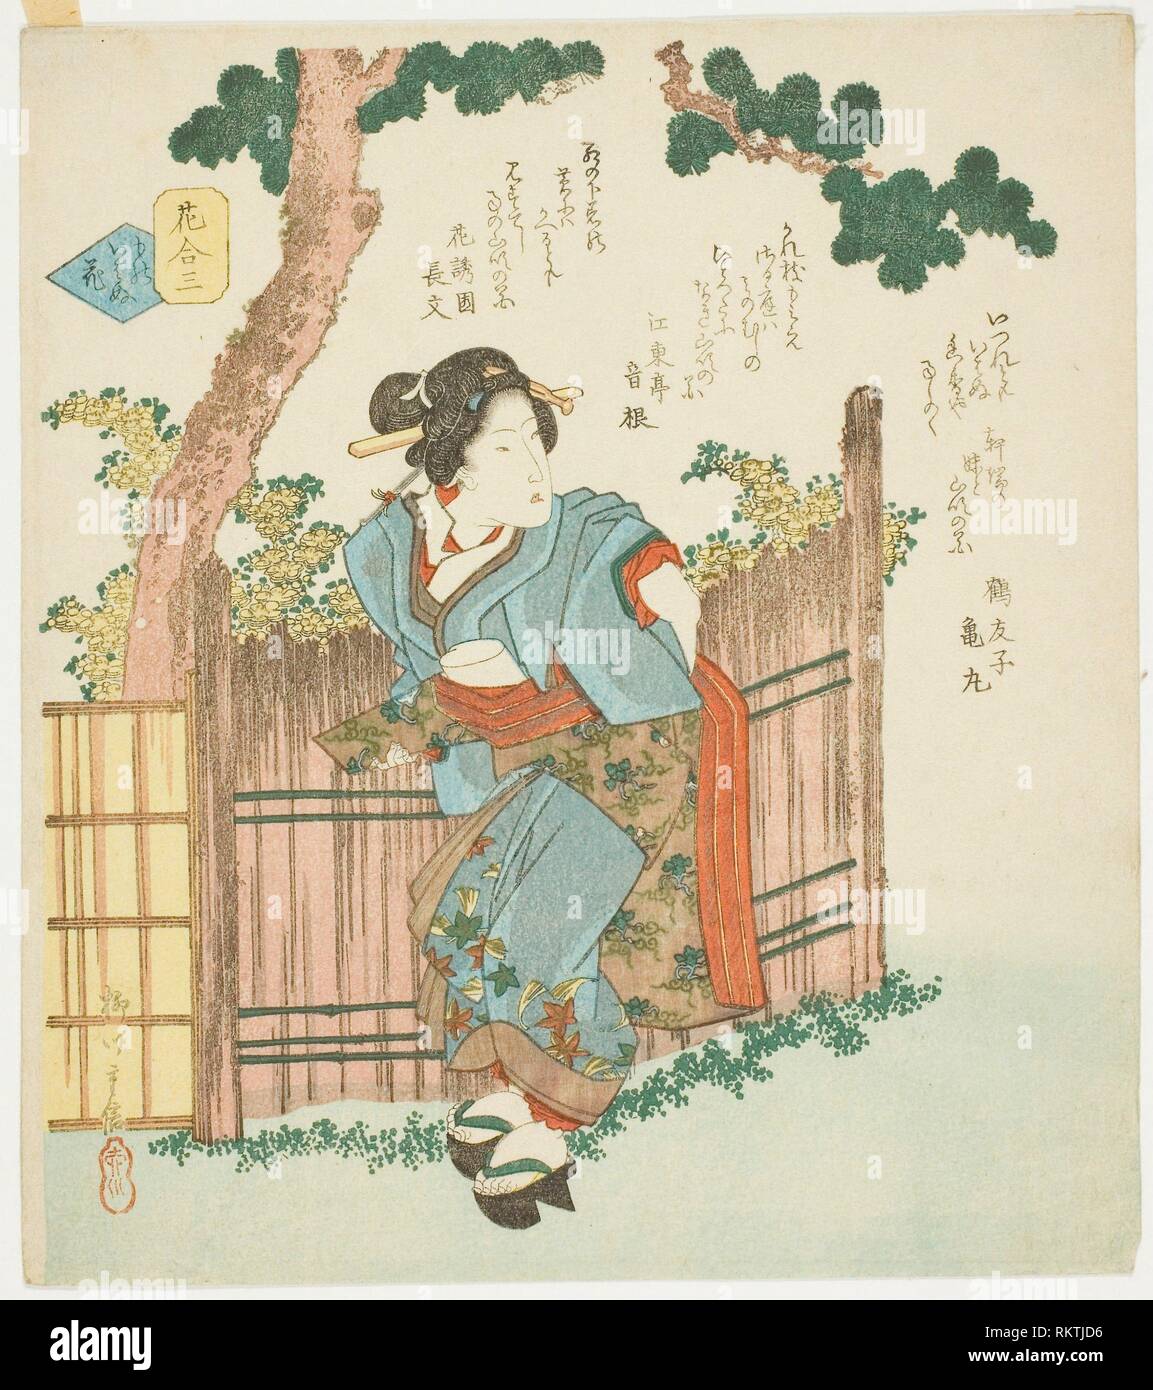 N° 3 : Fleur silencieuse (Mono iwanu hana), de la série ''Une comparaison des fleurs (Hana awase)'' - fin des années 1820 - Yanagawa Shigenobu II japonais, Banque D'Images